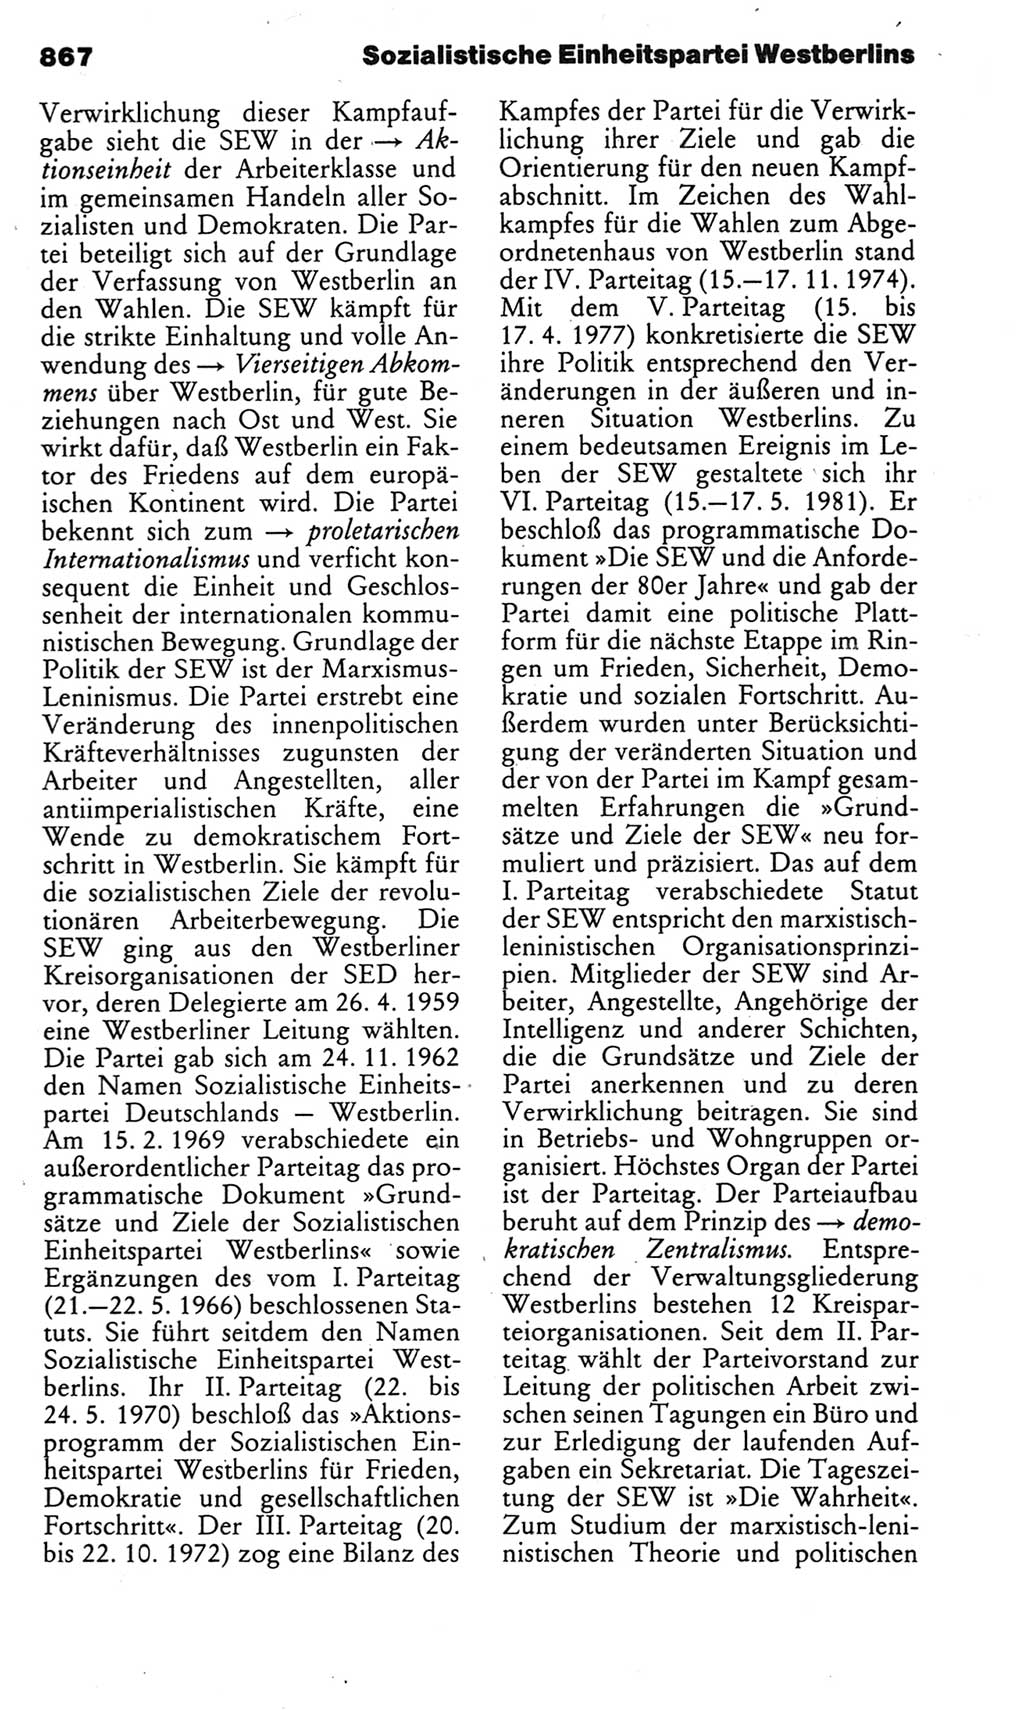 Kleines politisches Wörterbuch [Deutsche Demokratische Republik (DDR)] 1983, Seite 867 (Kl. pol. Wb. DDR 1983, S. 867)